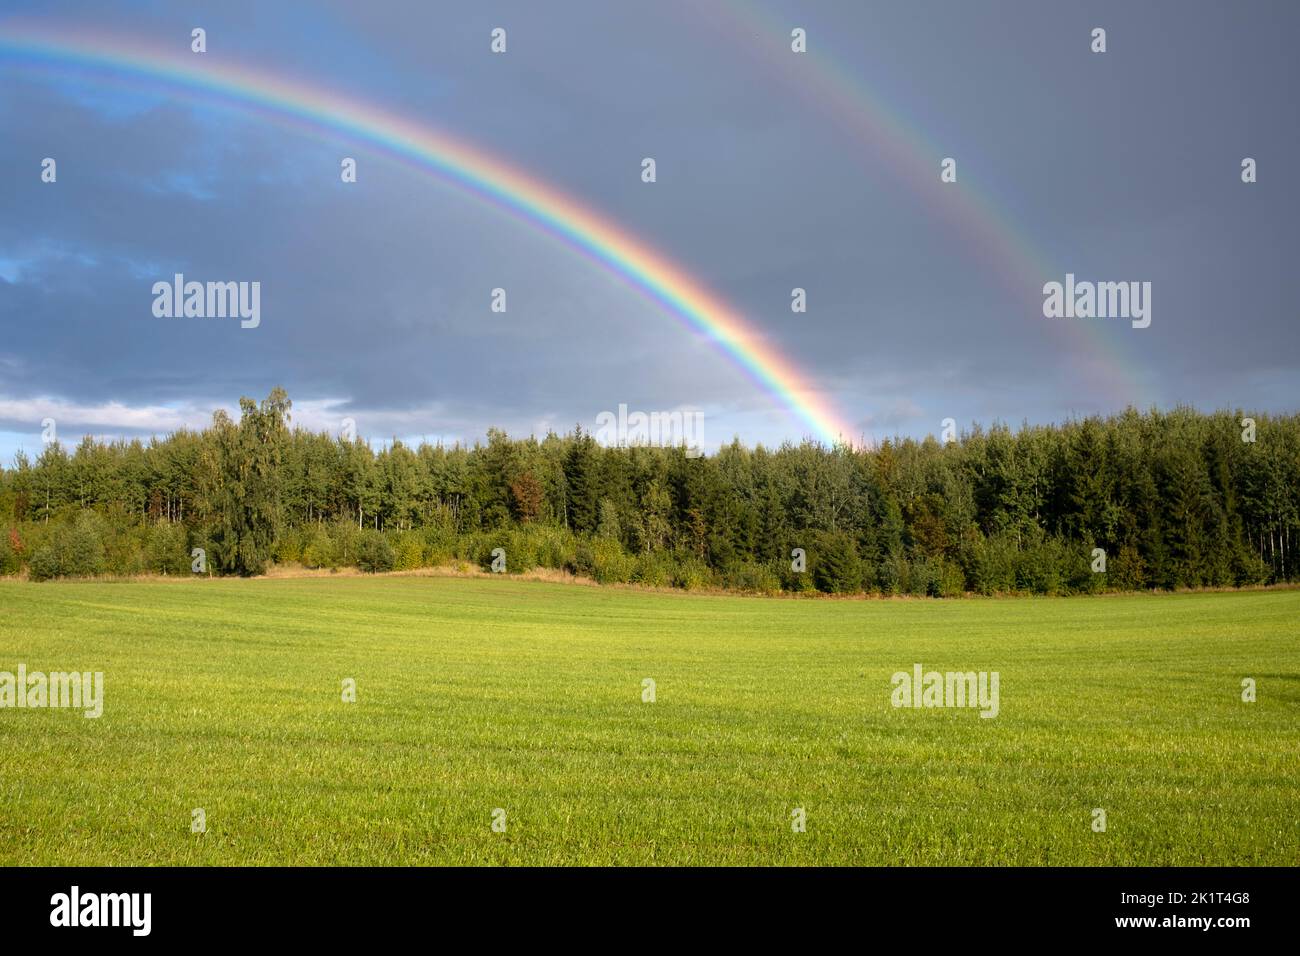 Double rainbow over Latvian landscape in Tukums area, Latvia Stock Photo